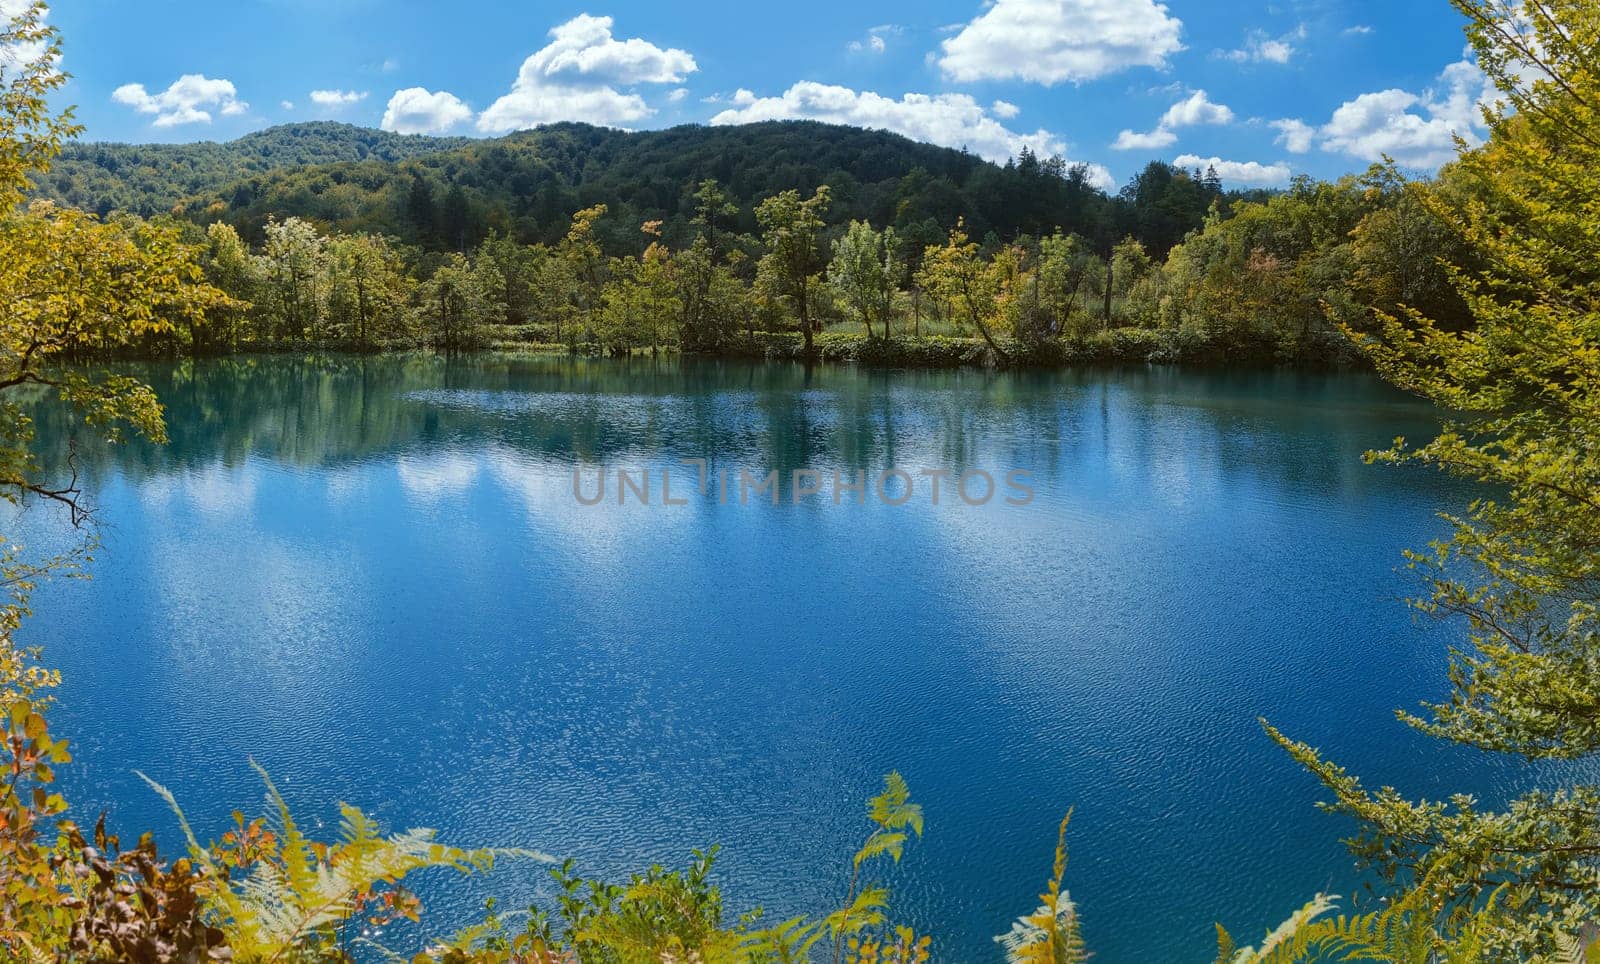 Lake in Plitvice National Park, Croatia